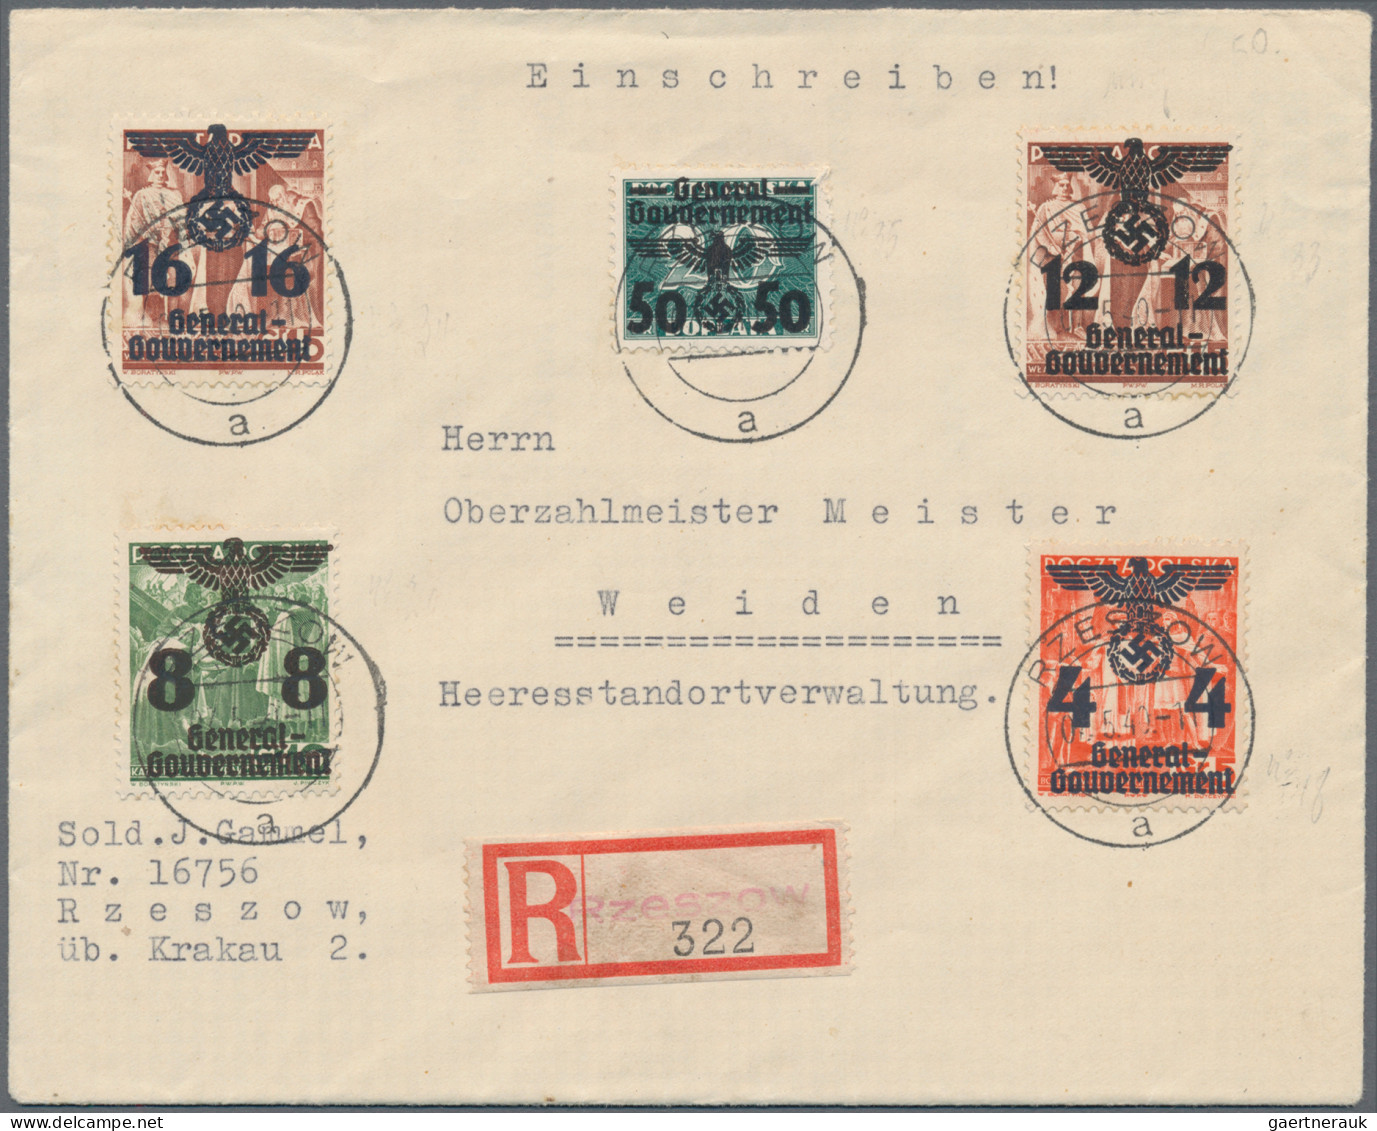 Deutsches Reich - 3. Reich: 1934/1944, umfangreicher und vielseitiger Bestand mi